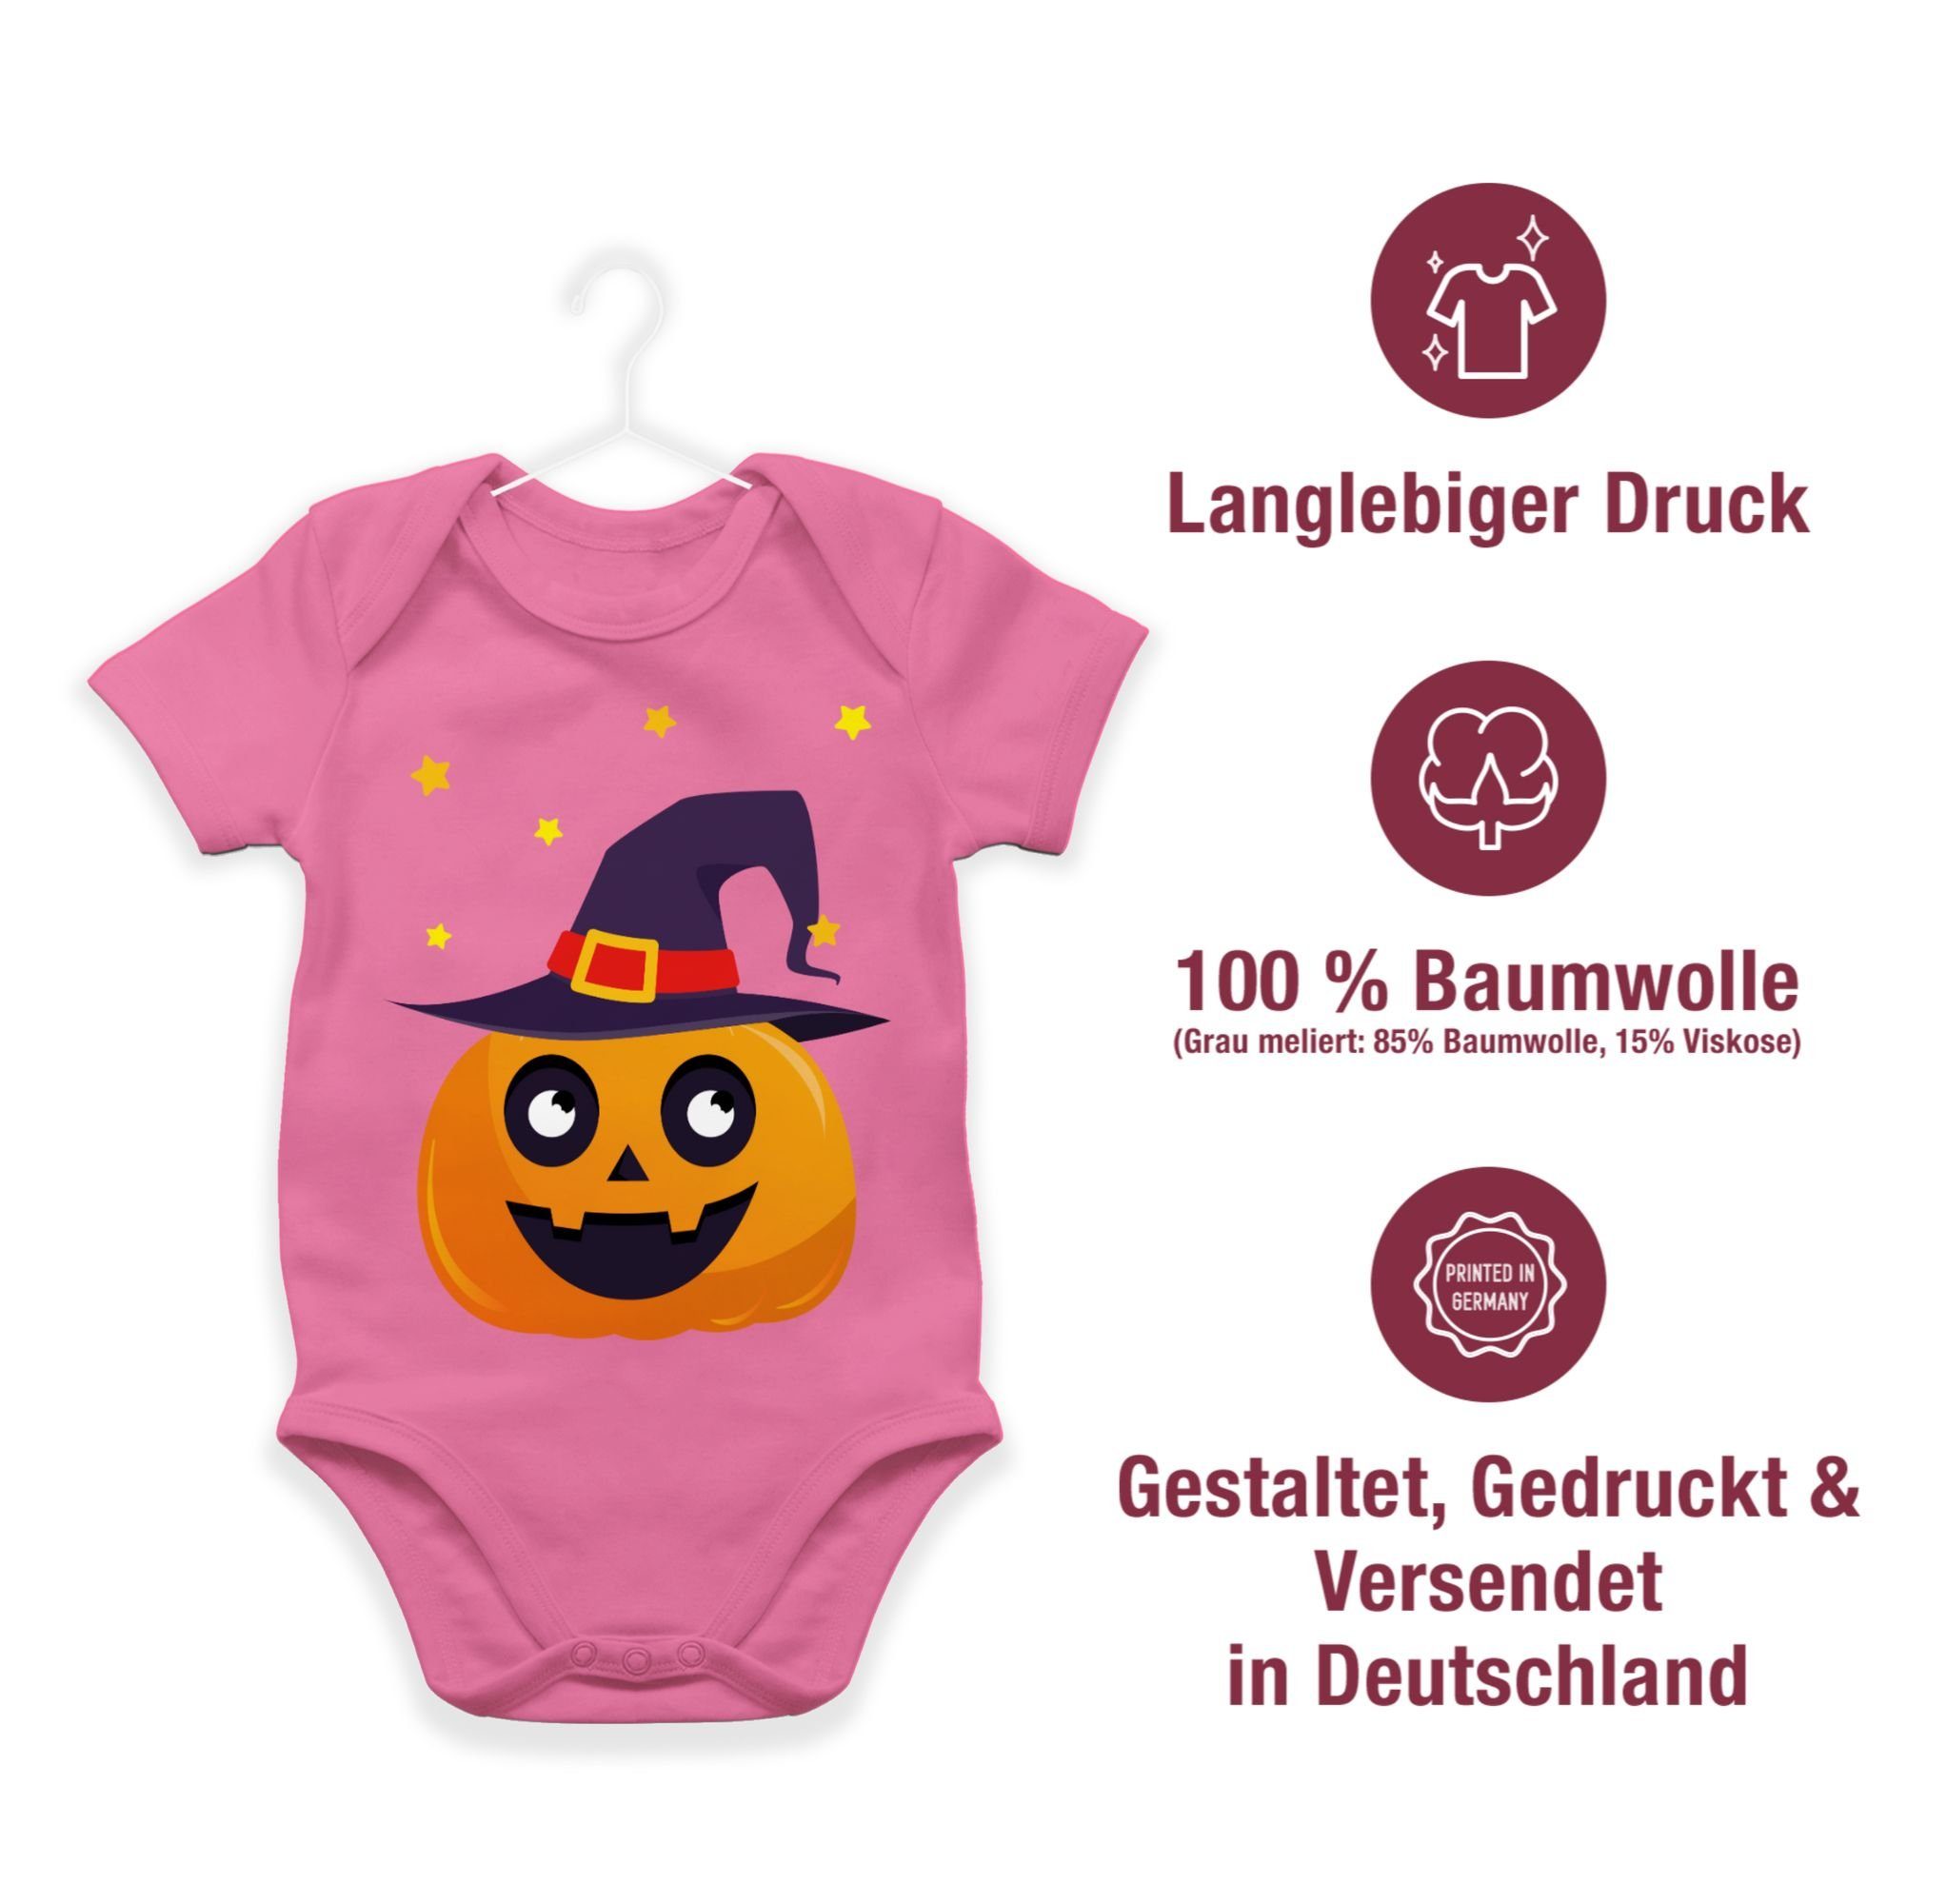 Shirtracer Shirtbody Süßer Kürbis Niedlich 3 Kostüme Pink Pumpkin für Halloween Baby